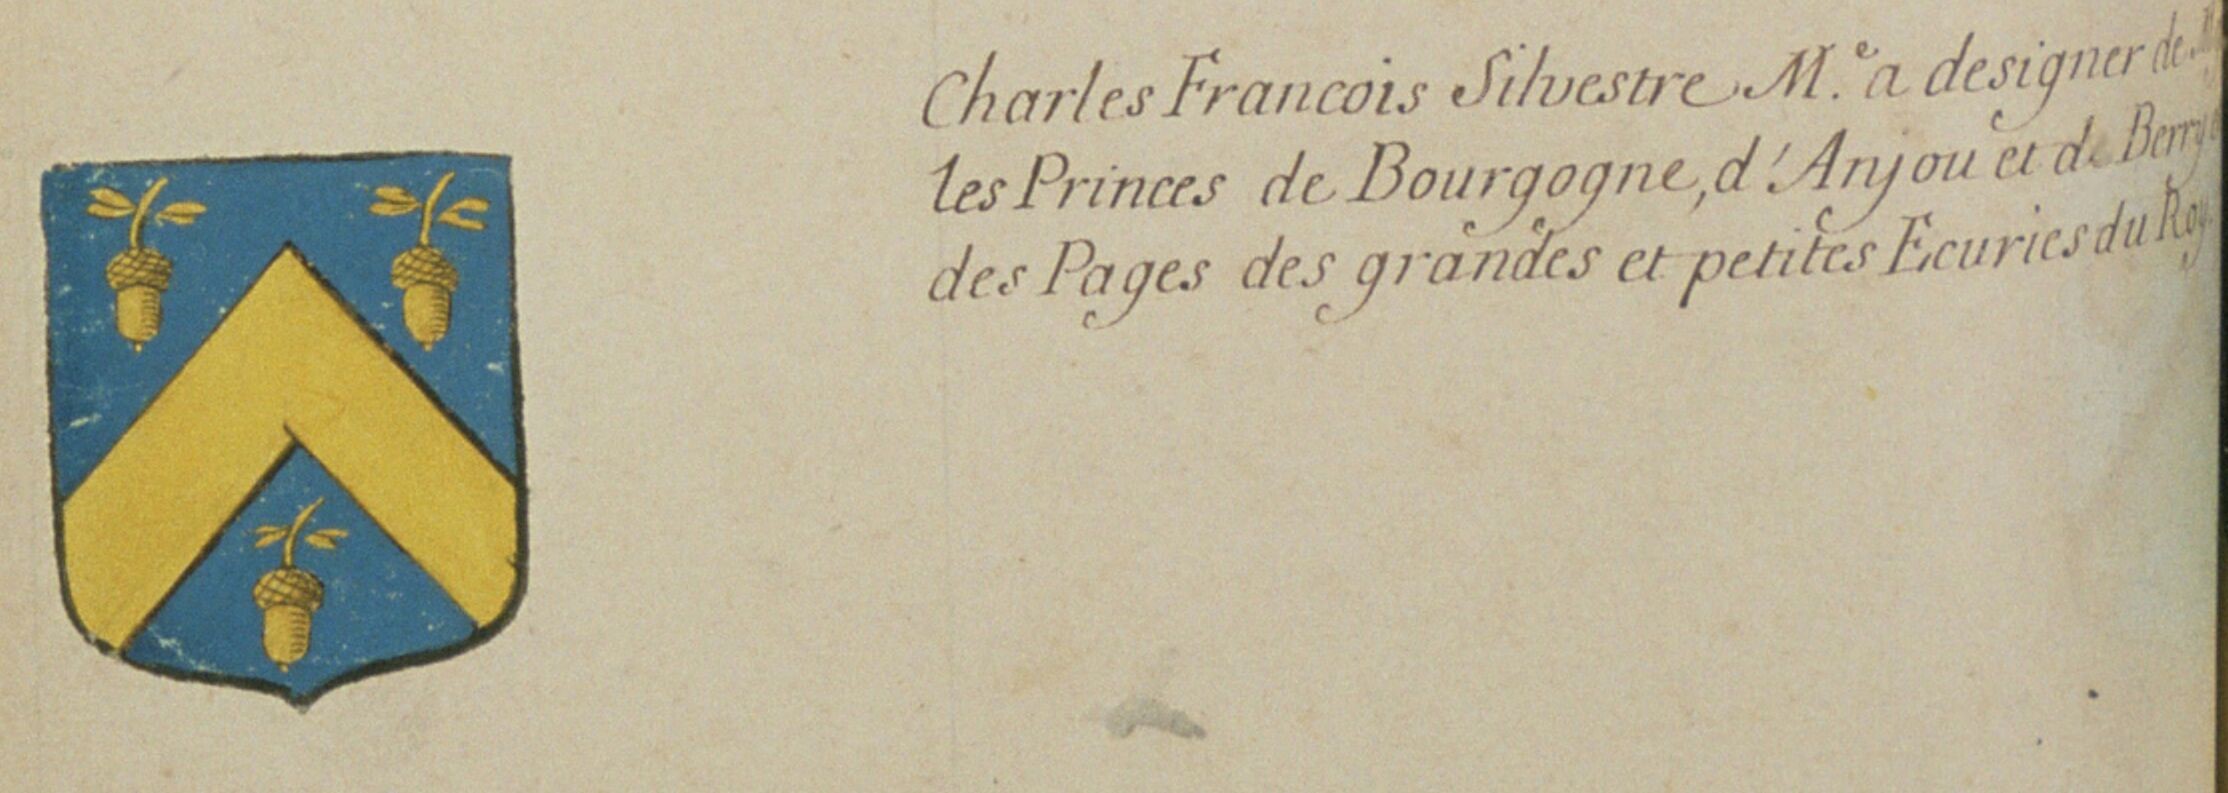  Armes de Charles-François Silvestre - Document 1